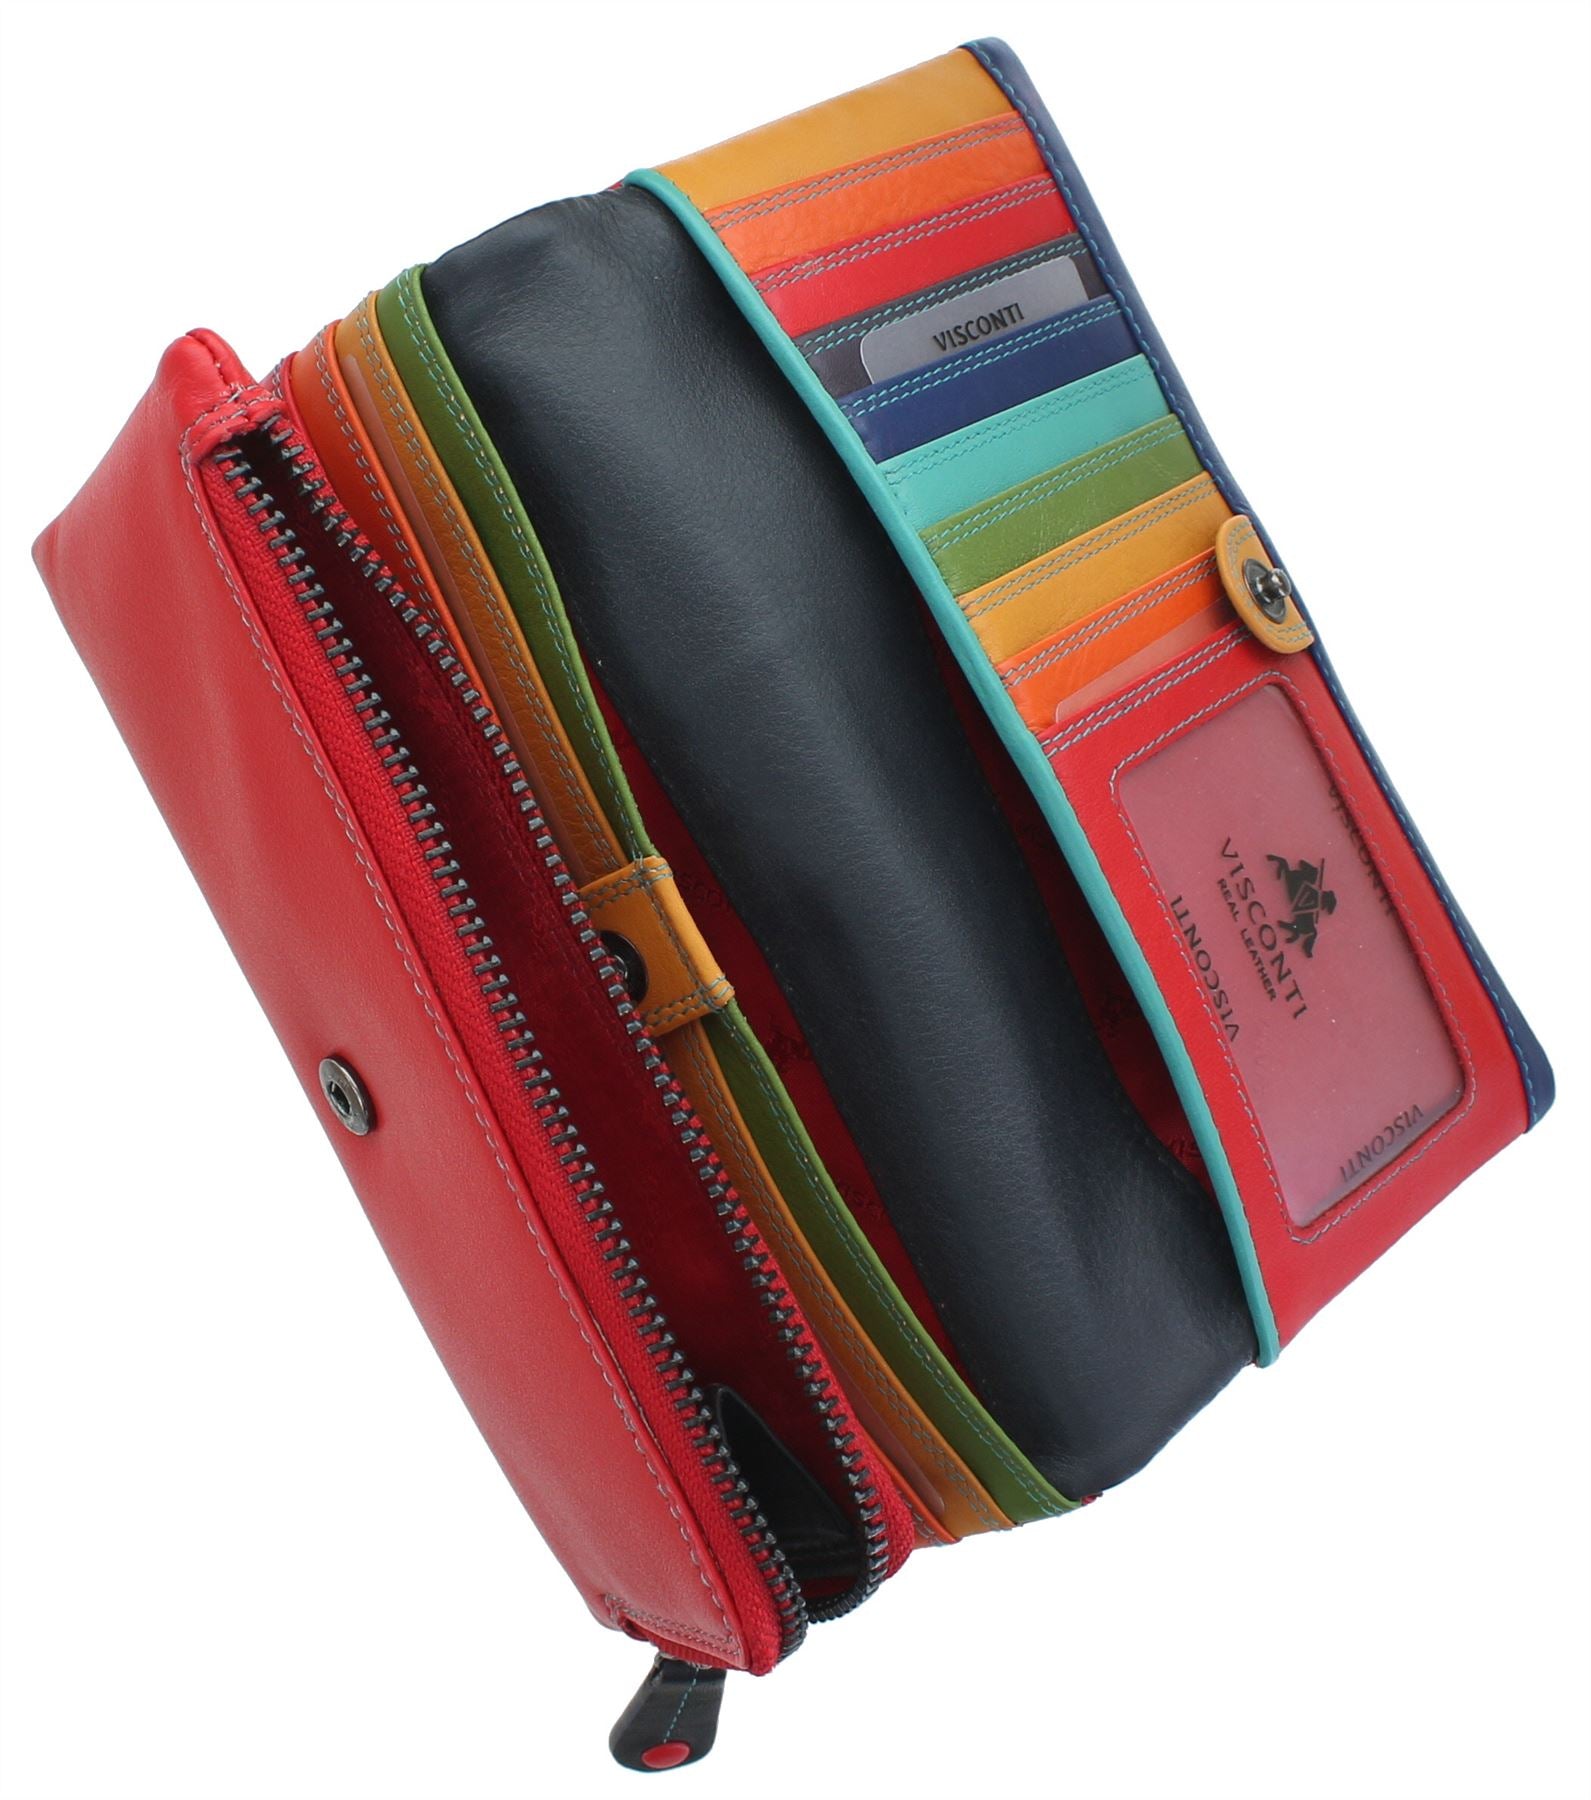 Mossimo soft leather purse | Soft leather purse, Leather purses, Leather